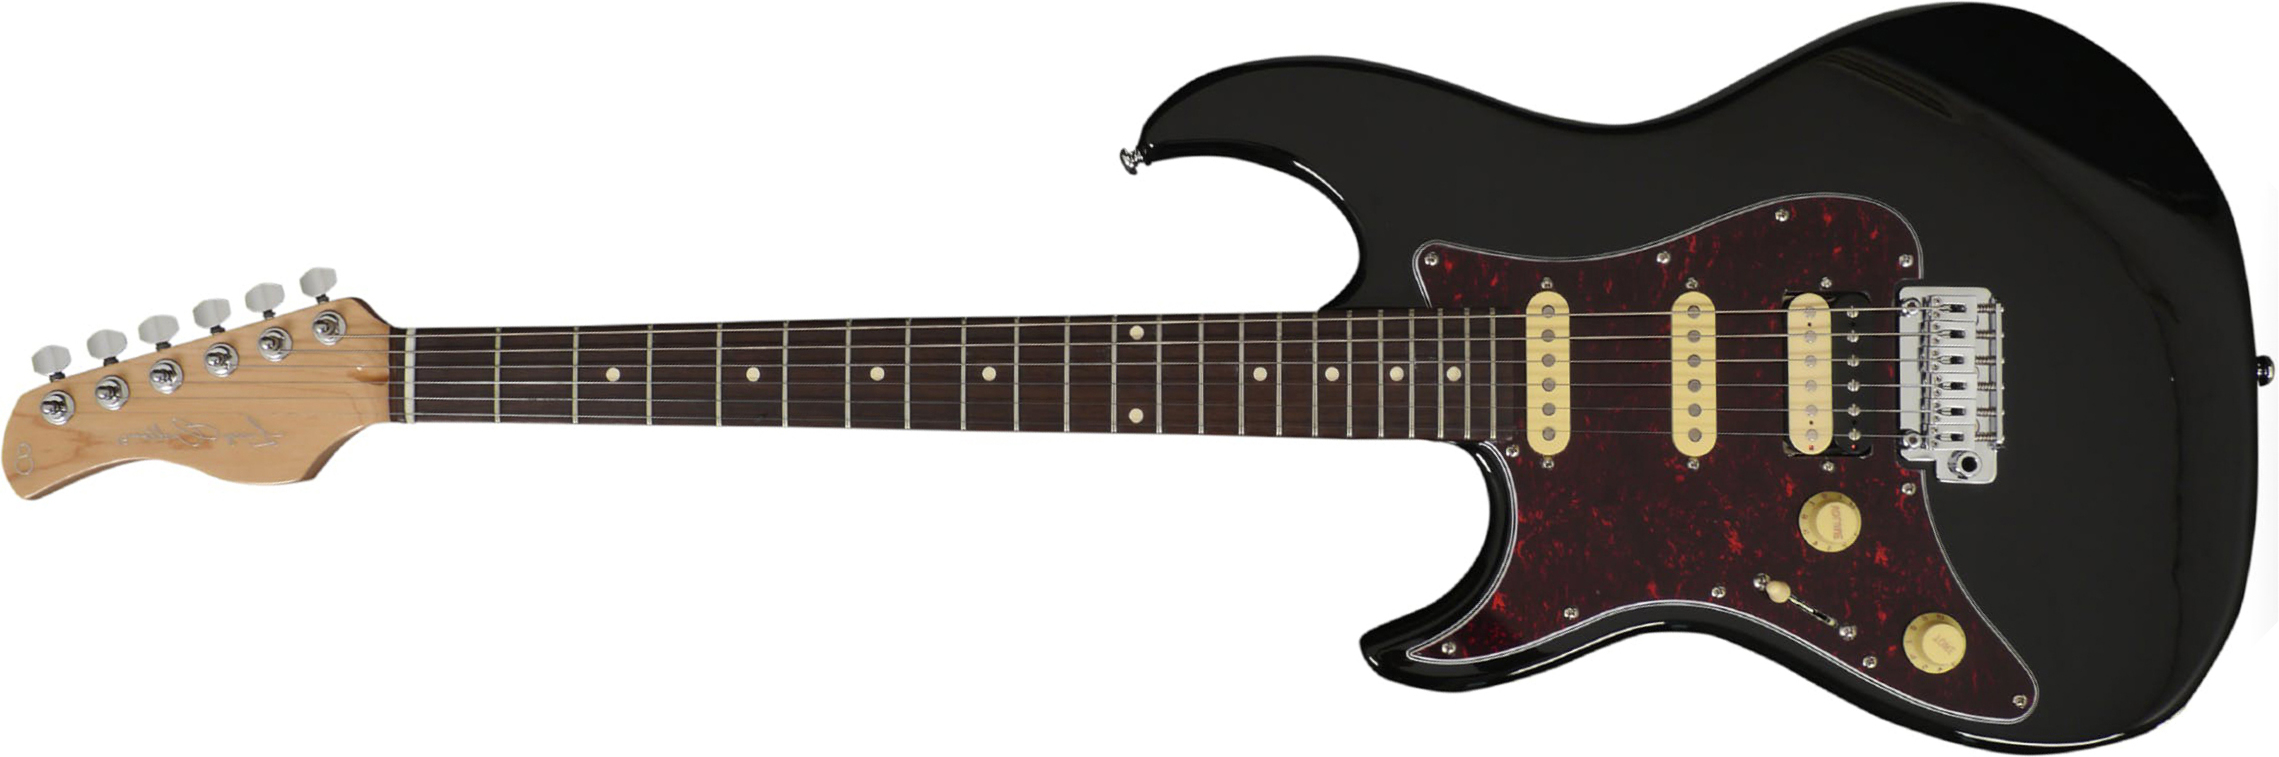 Sire Larry Carlton S3 Lh Signature Gaucher Hss Trem Rw - Black - E-Gitarre für Linkshänder - Main picture